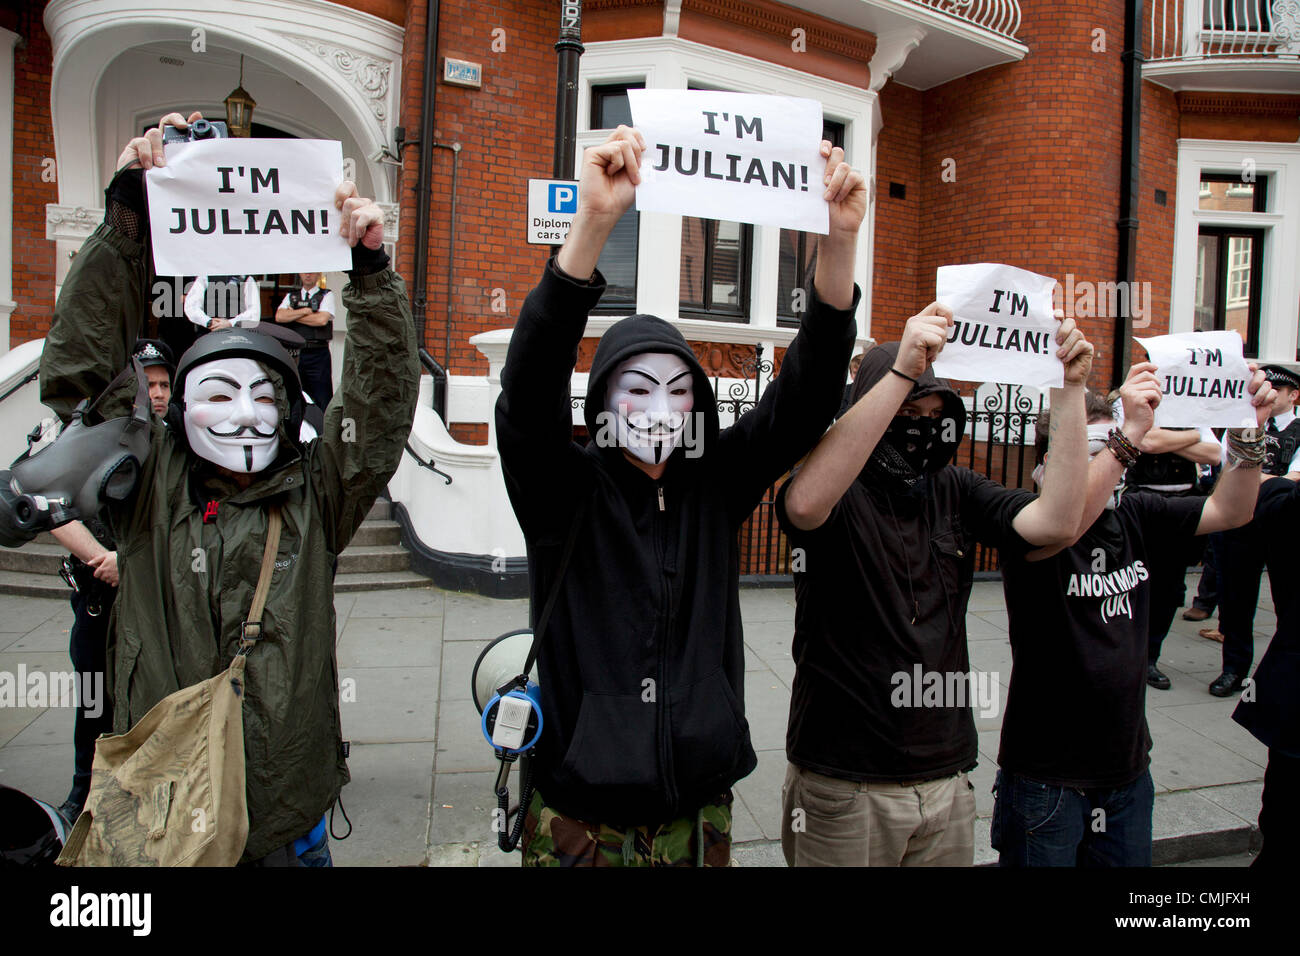 Londres, Royaume-Uni. Jeudi 16 août 2012. Les partisans de Julian Assange de UK anonyme portant des masques à l'extérieur de l'ambassade de l'Équateur. Les manifestants étaient pacifiques et tenaient des pancartes disant 'Je suis Julian'. Banque D'Images